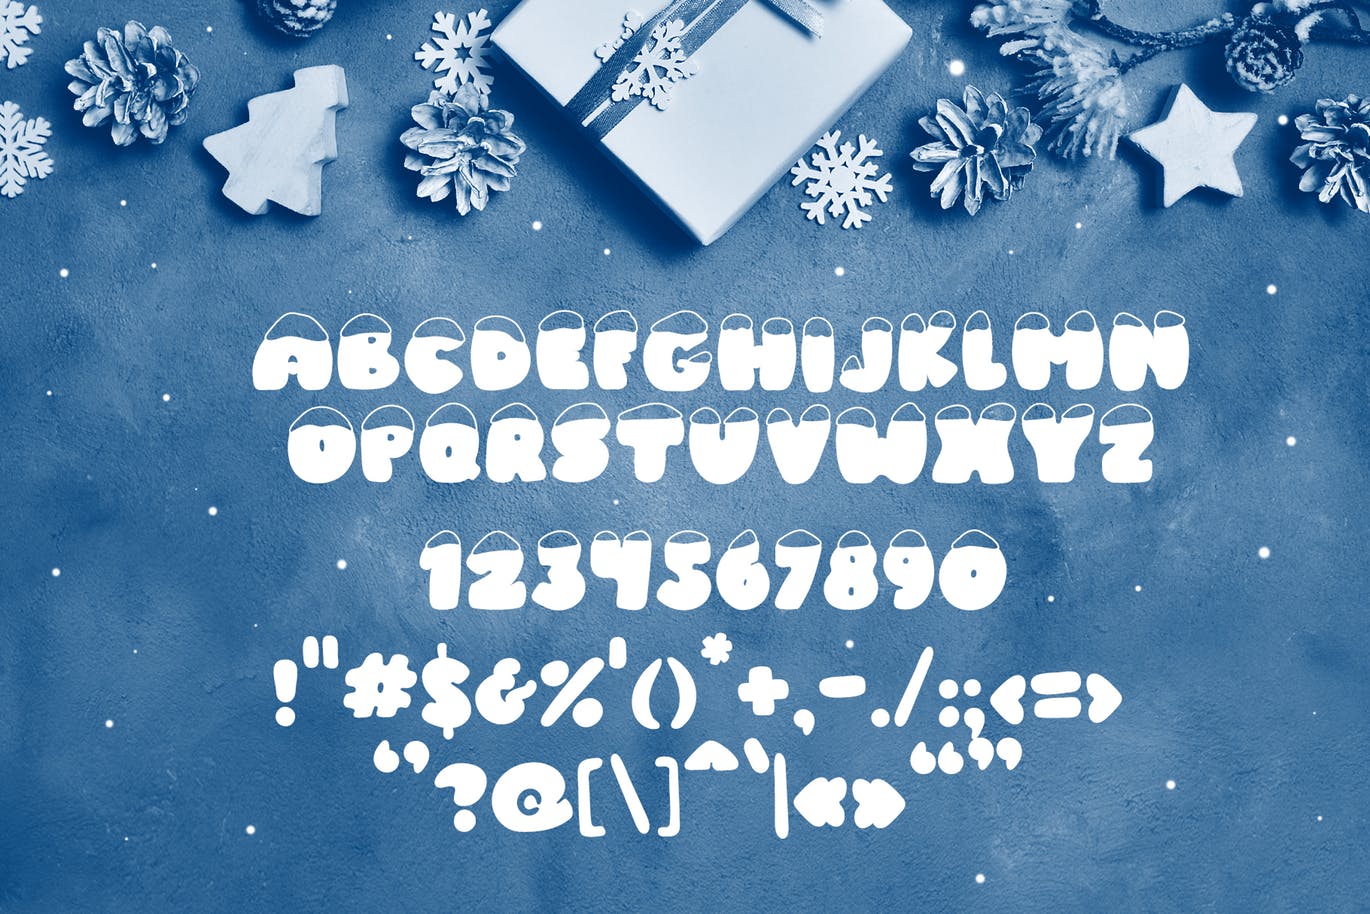 斯堪的纳维亚风格可爱积雪字体16素材精选 Frosty Joy Hand Drawn Display Font插图(5)